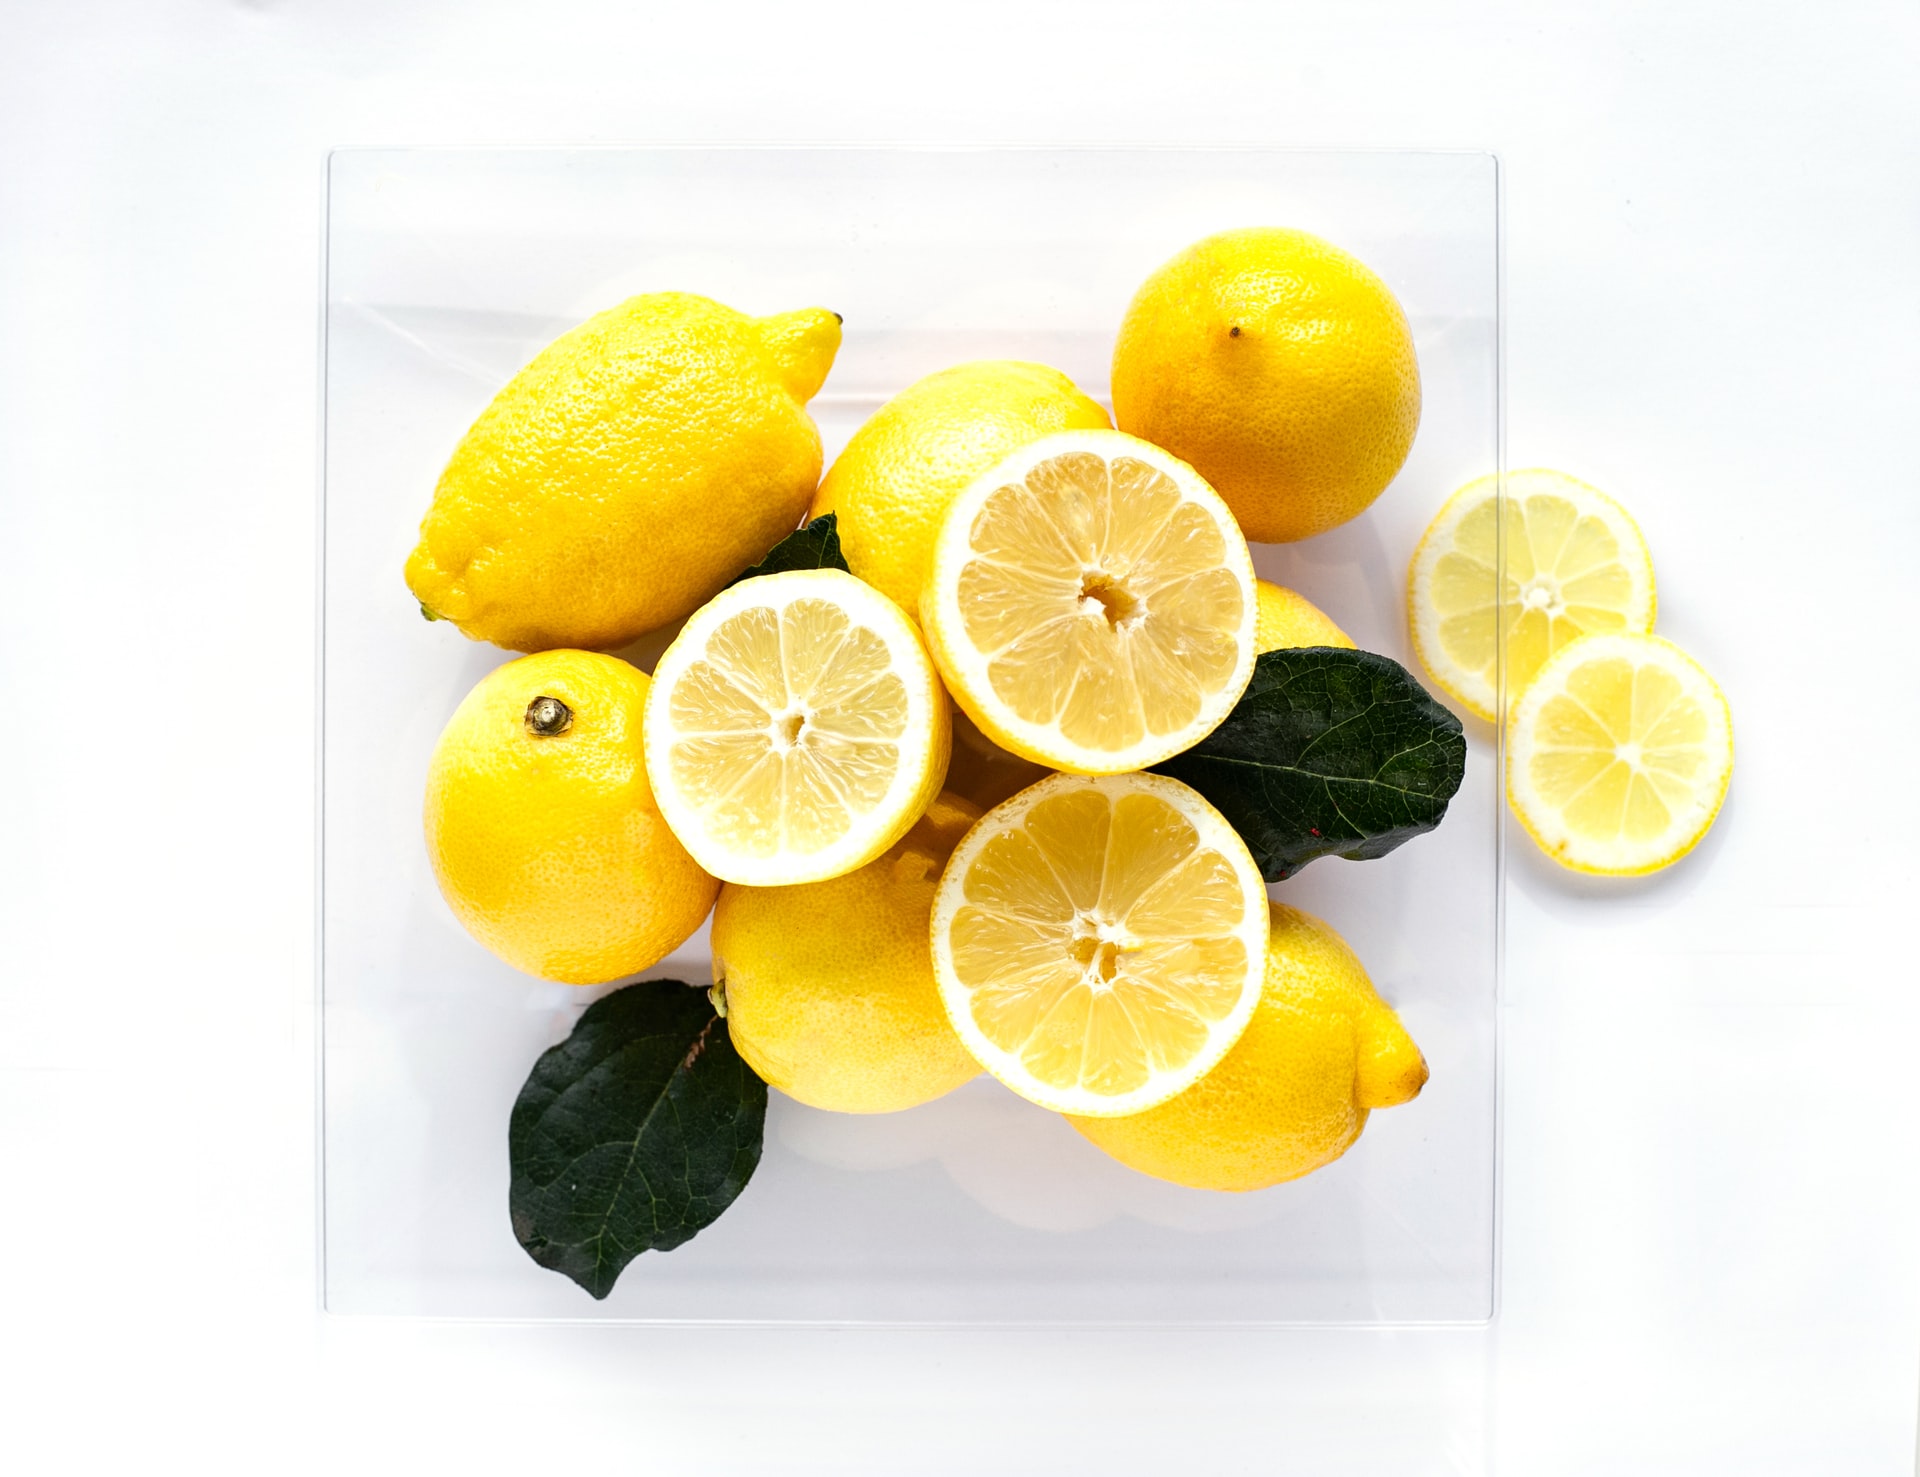 Jak zrobić peeling z cytryny? Domowy sposób